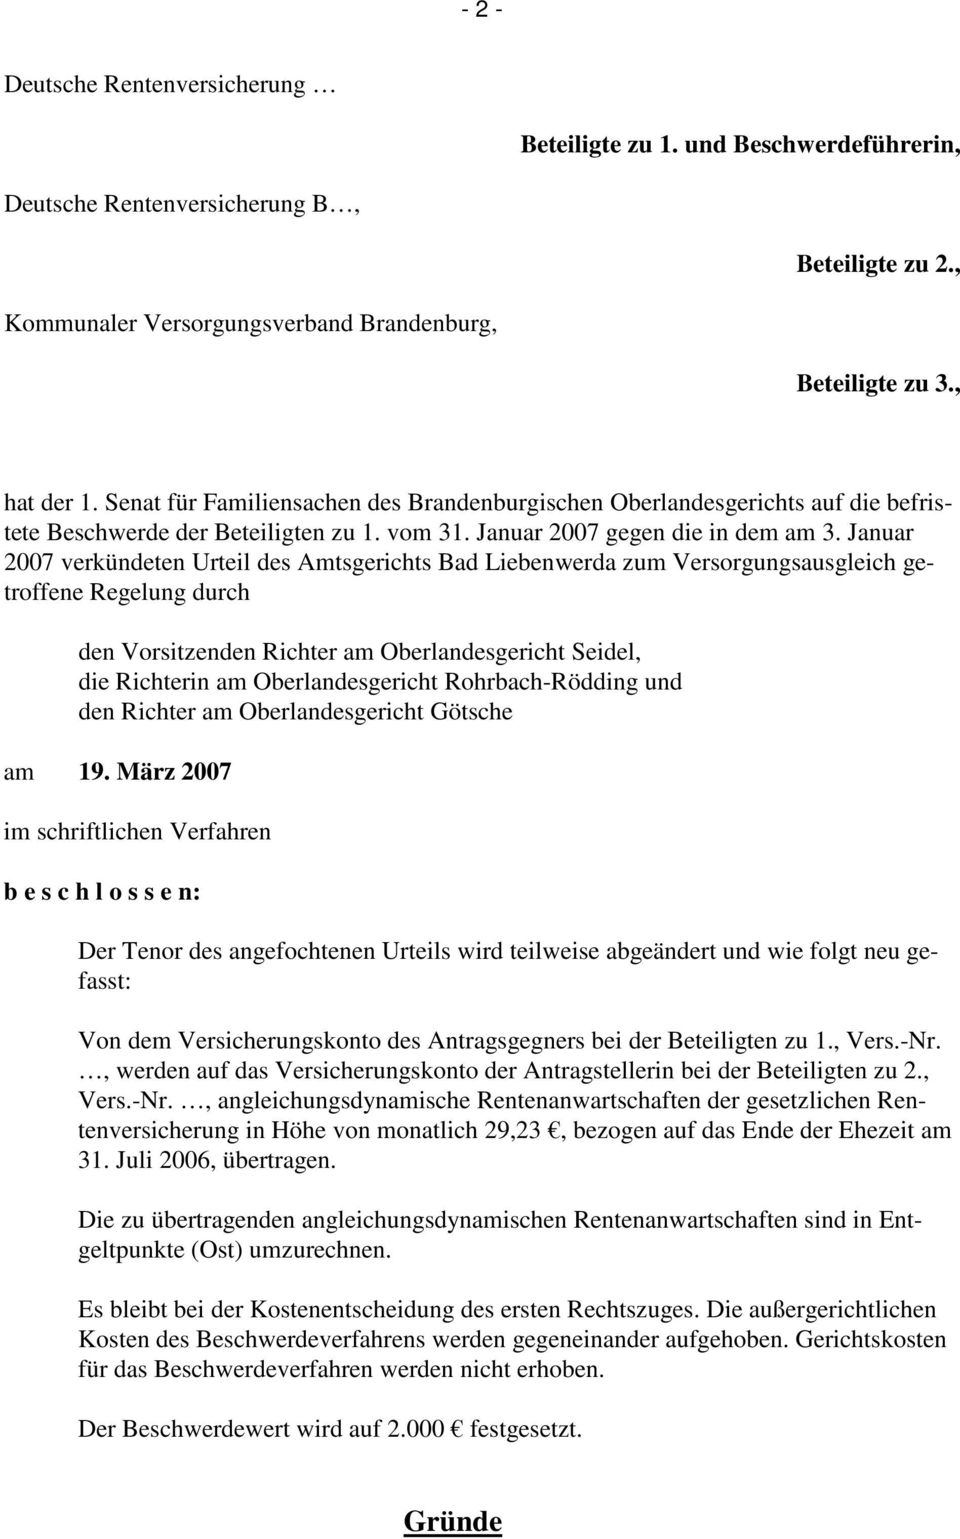 Januar 2007 verkündeten Urteil des Amtsgerichts Bad Liebenwerda zum Versorgungsausgleich getroffene Regelung durch den Vorsitzenden Richter am Oberlandesgericht Seidel, die Richterin am